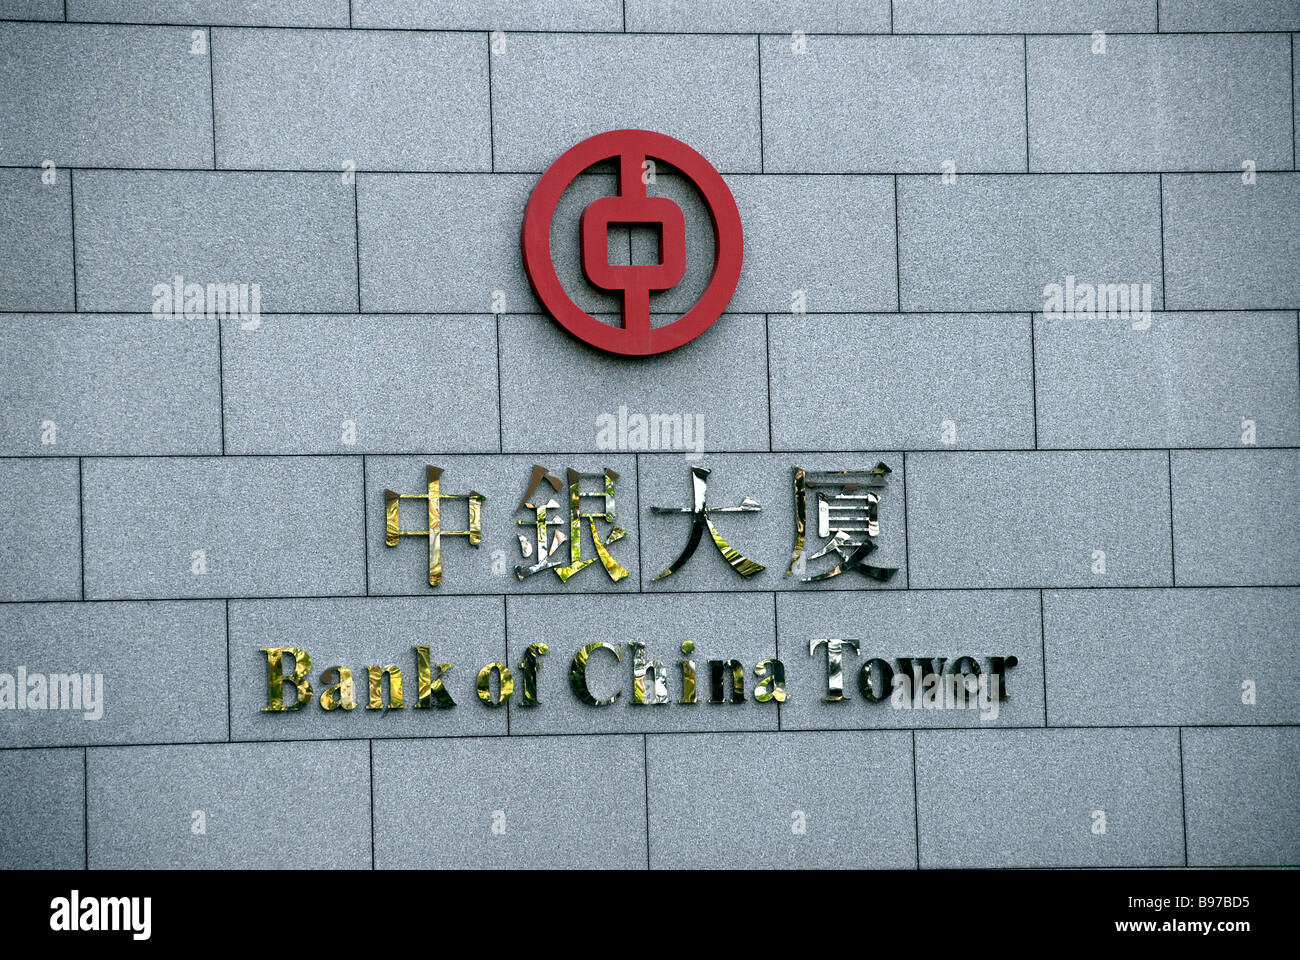 Bank of China tower, Hong Kong island, Hong Kong, China Stock Photo